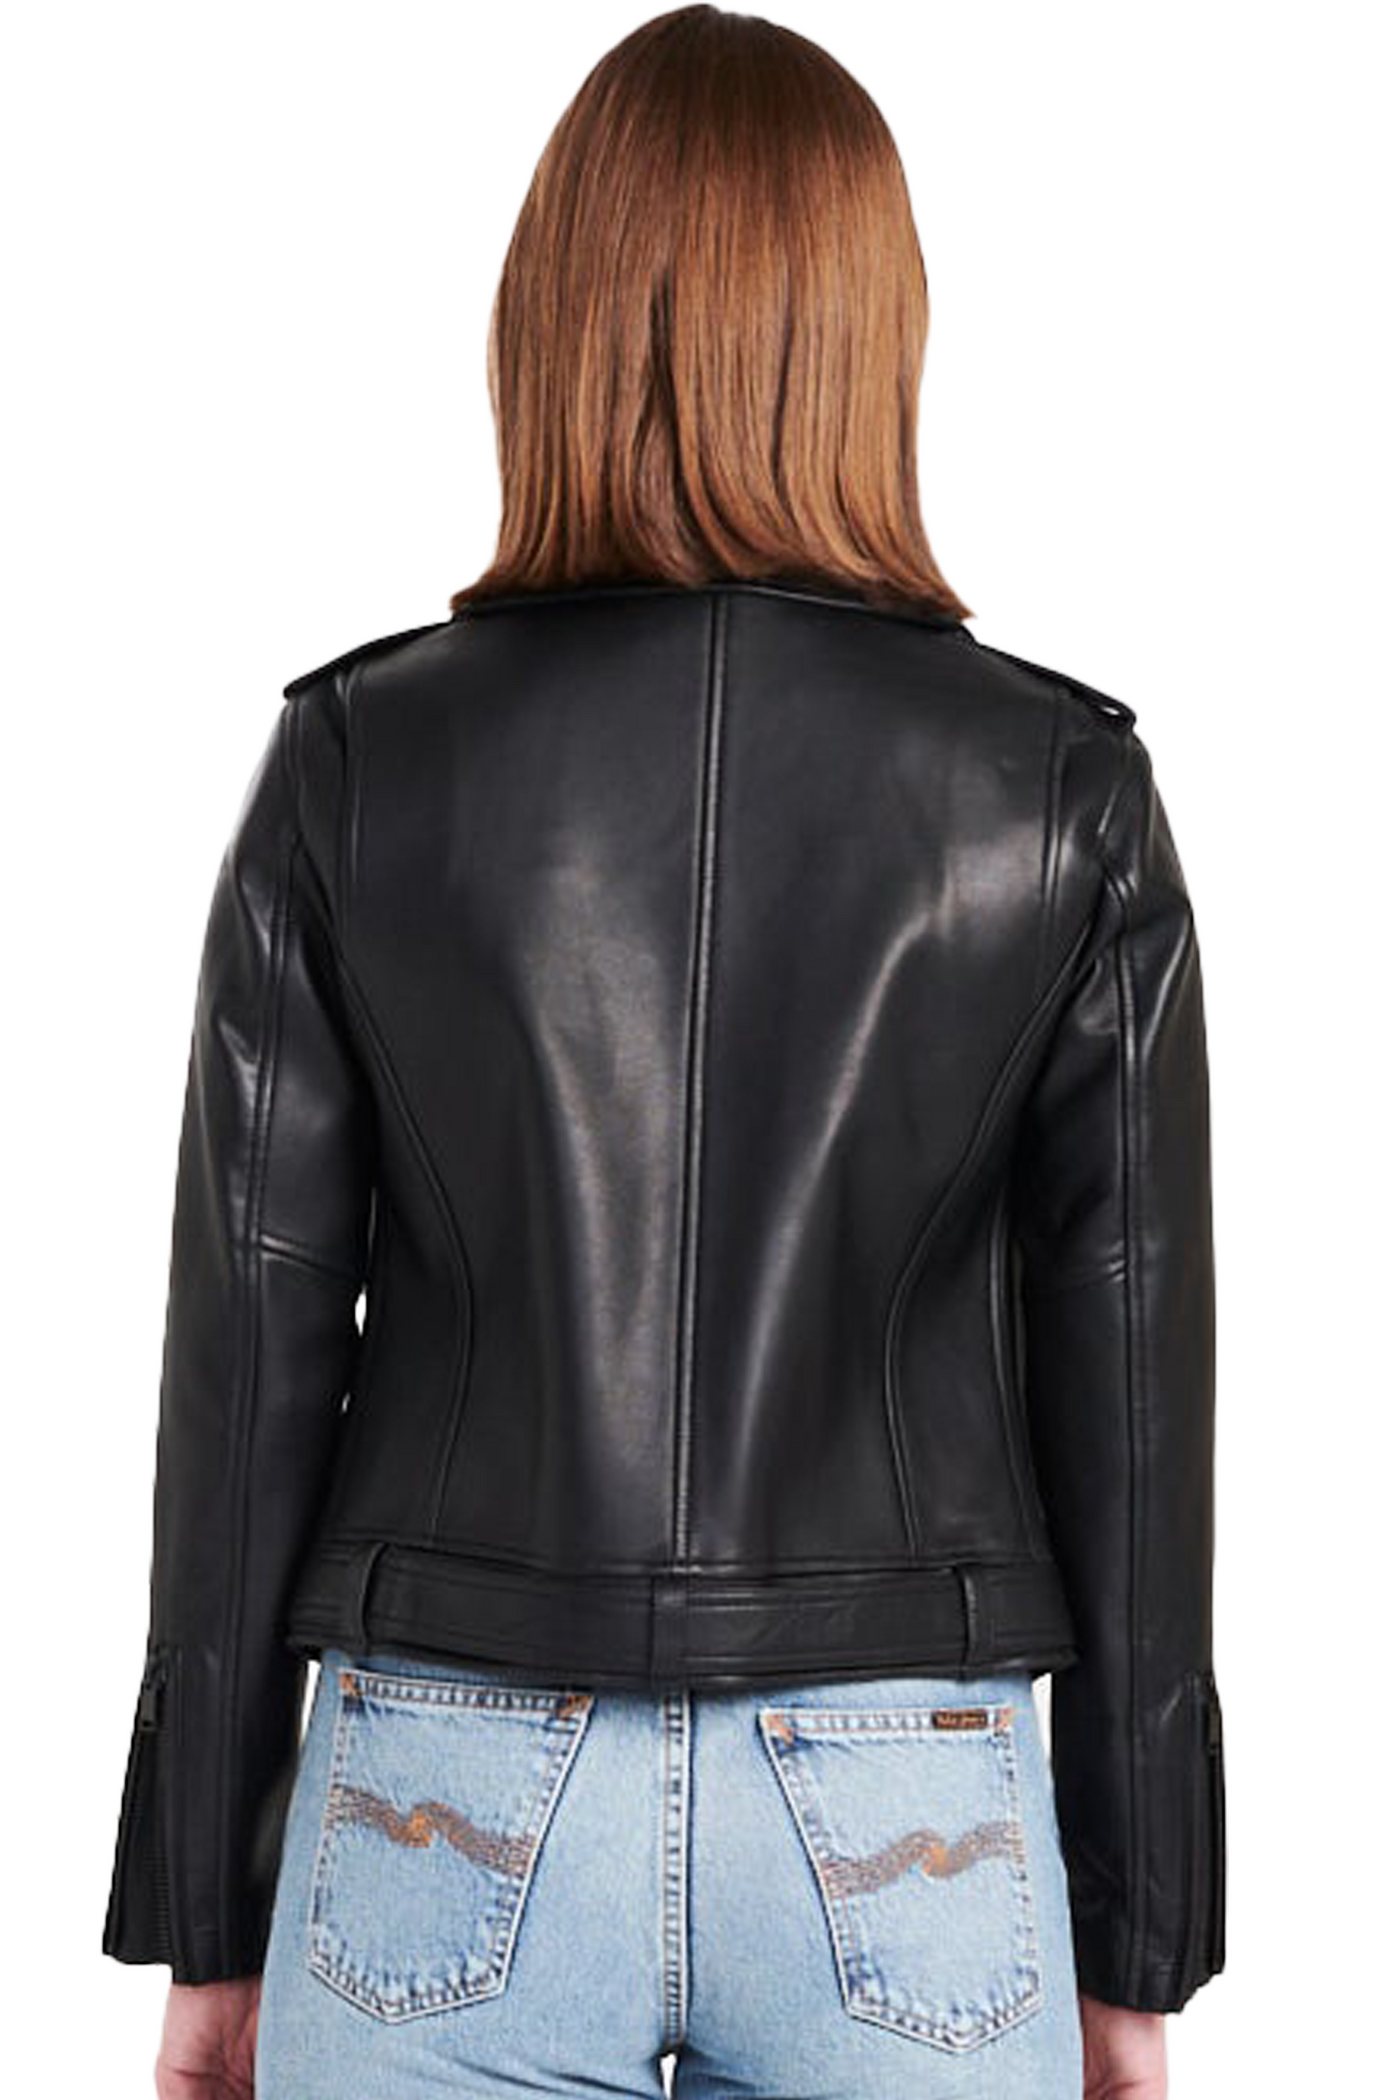 ena pelly: new yorker lambskin leather biker jacket with matte black hardware